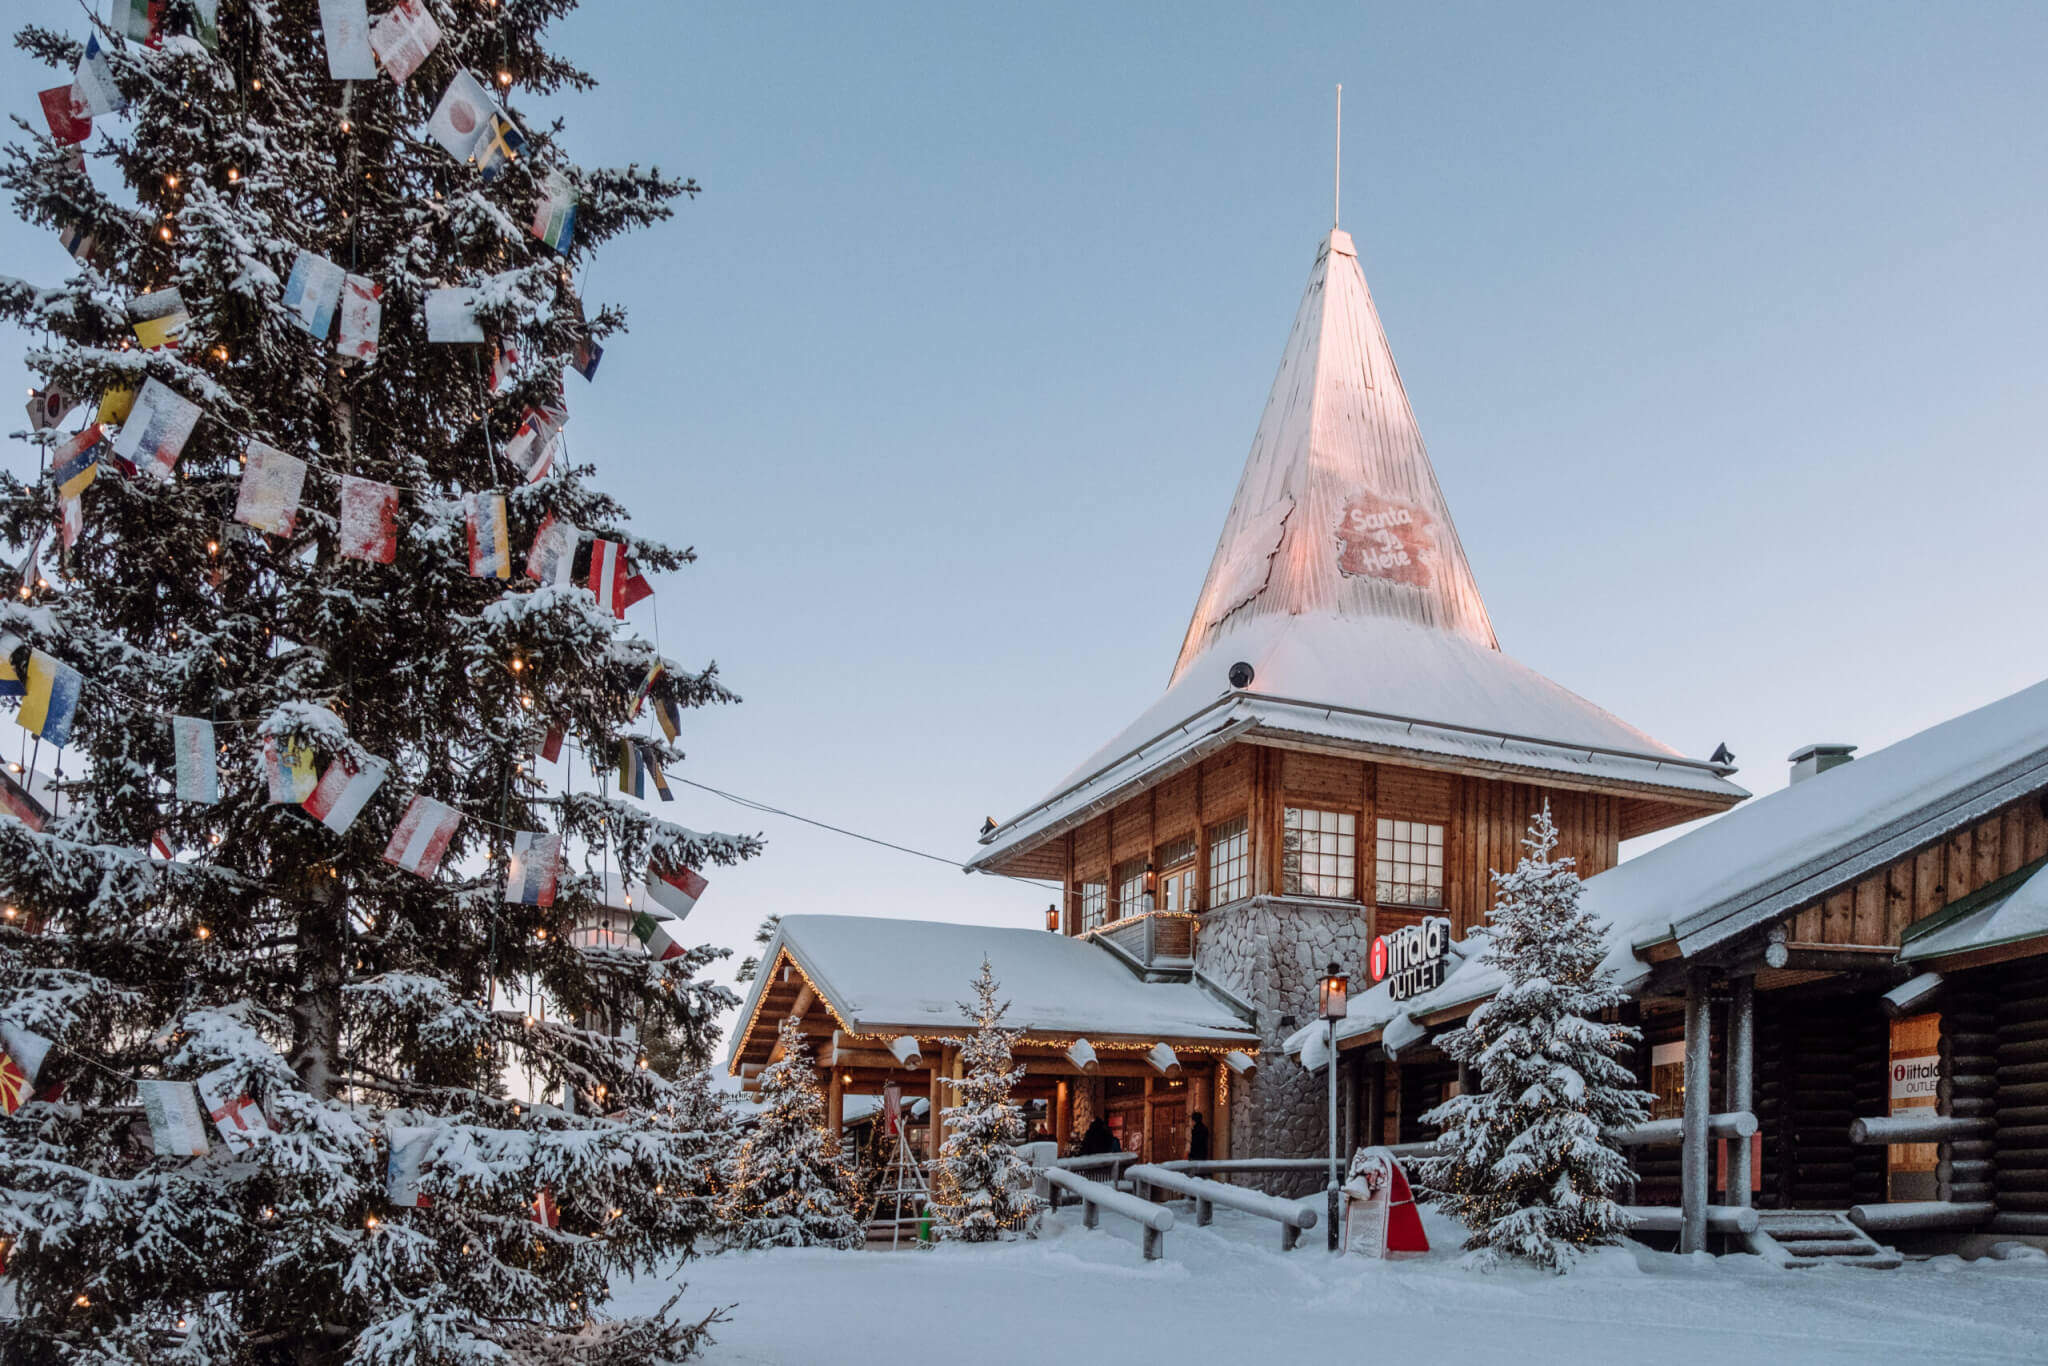 Santa Claus village in Finland